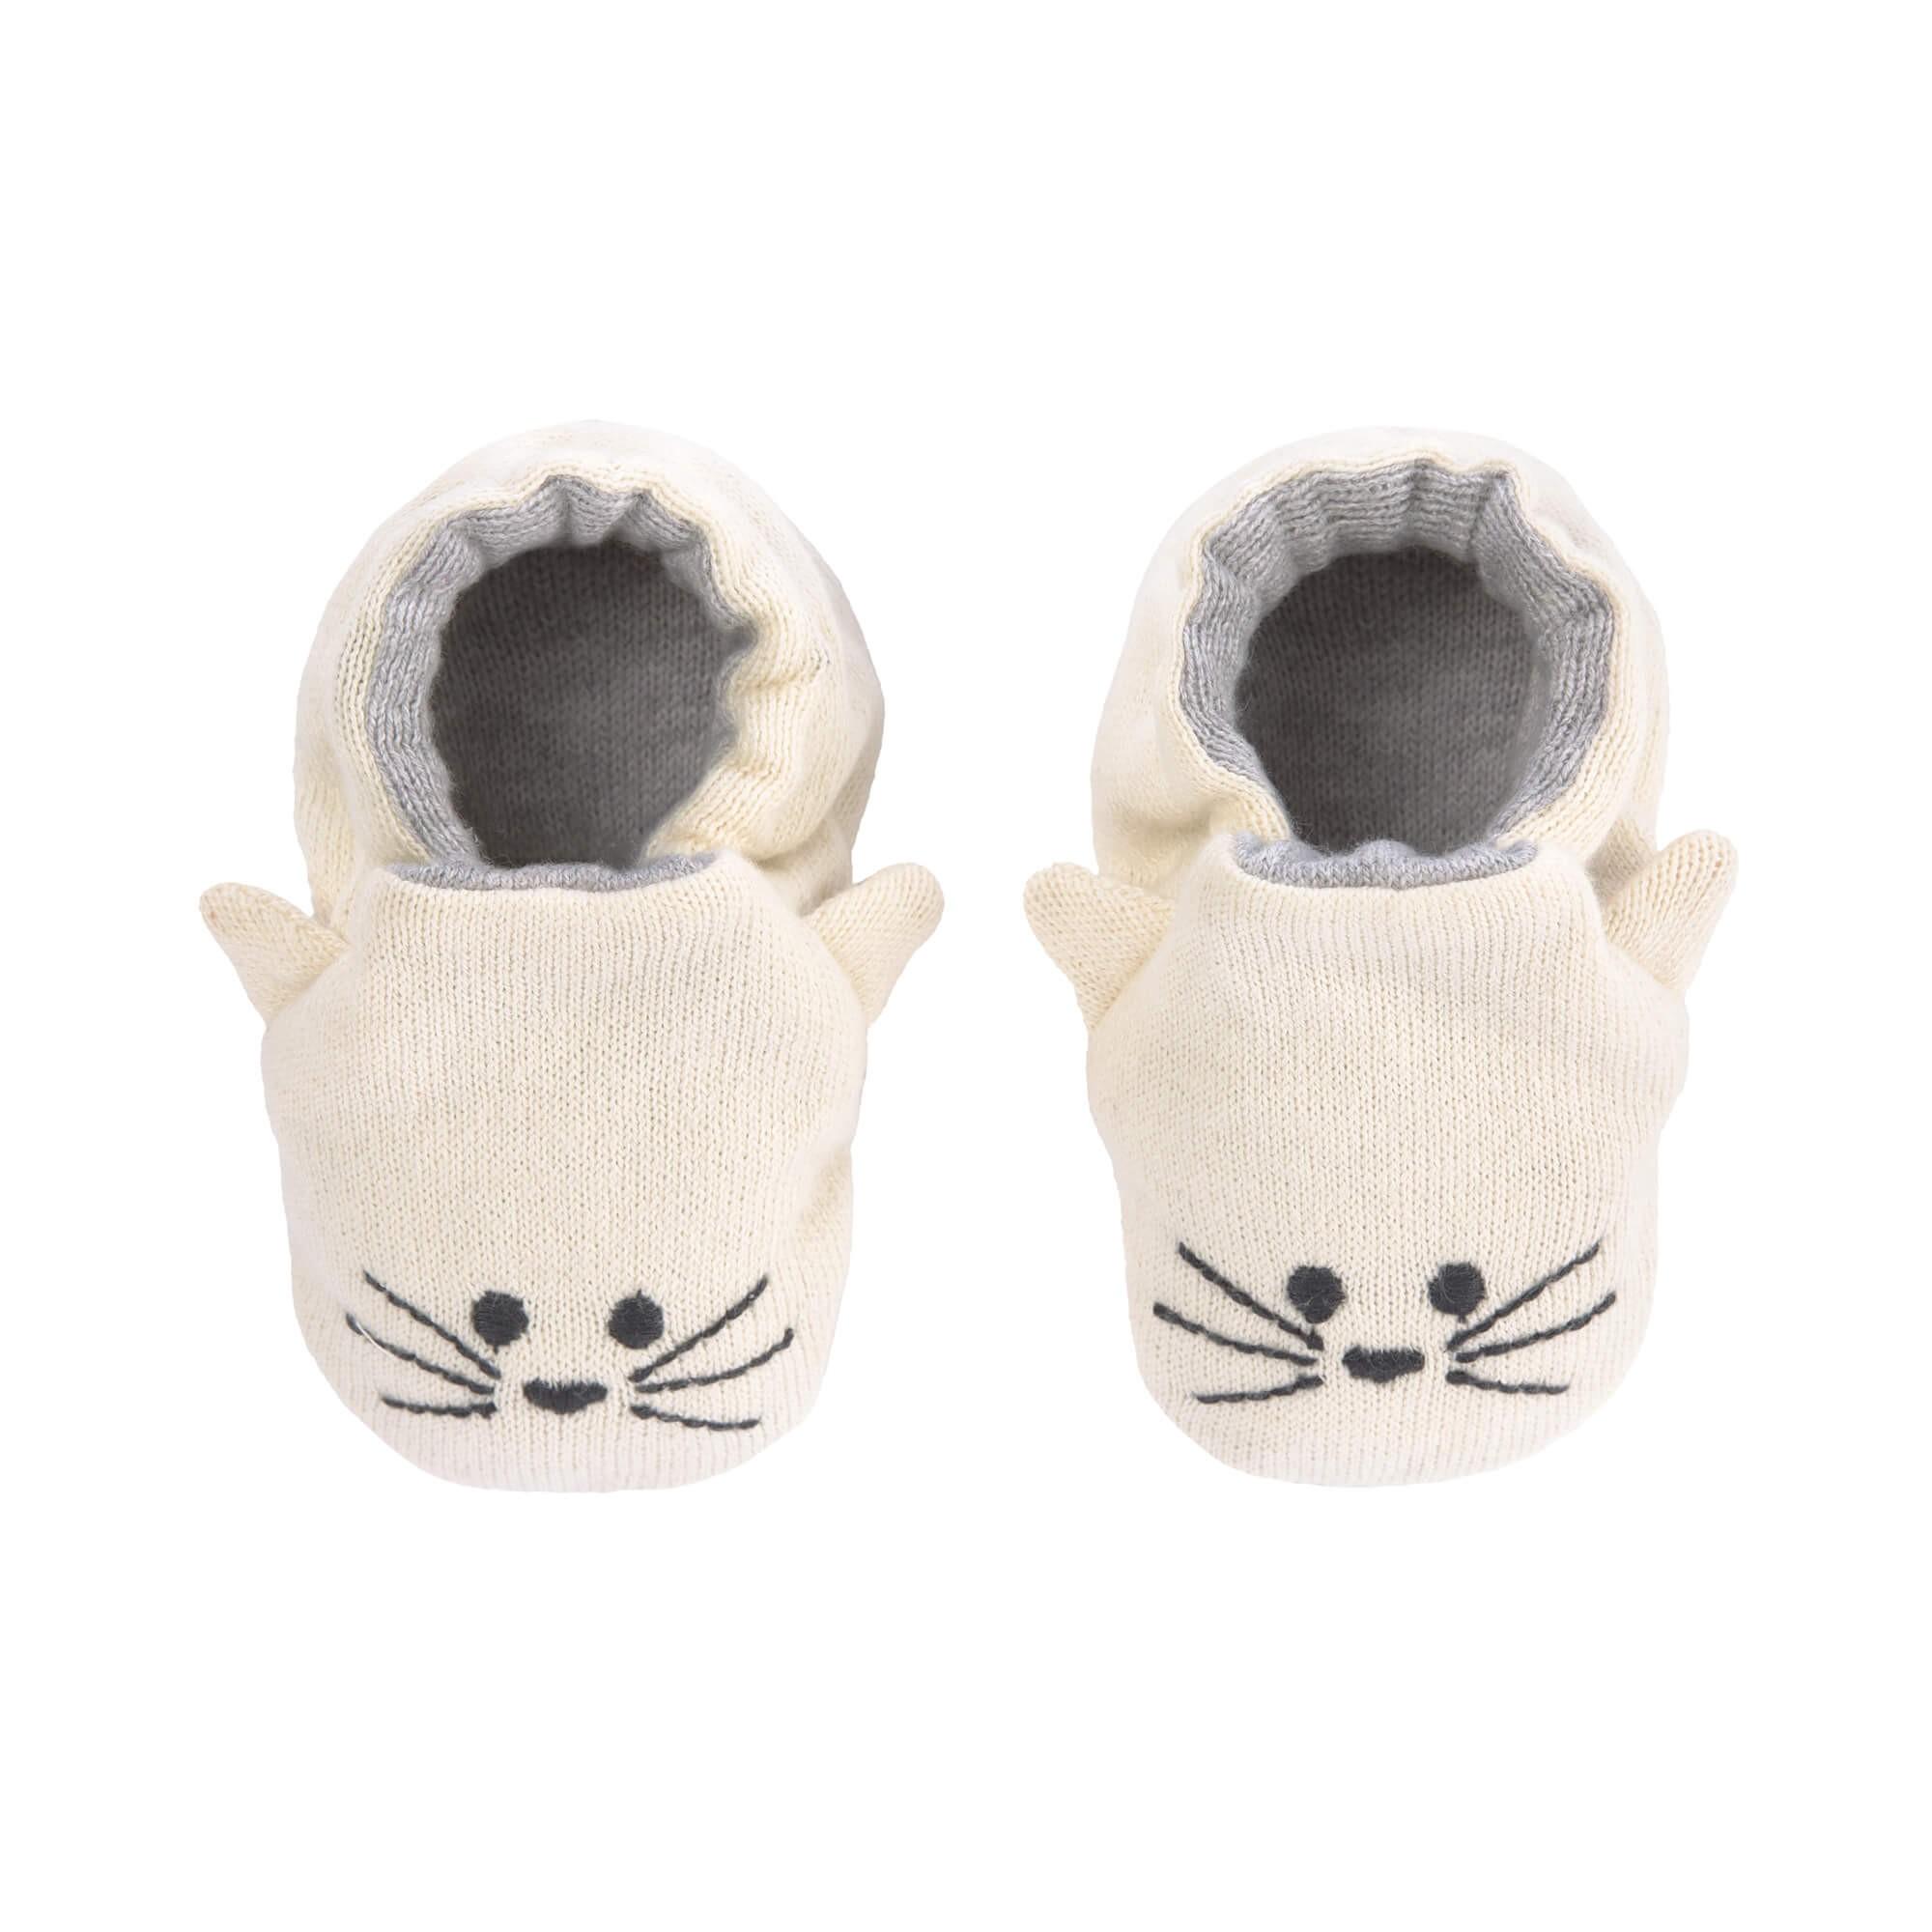 Lassig - Baby shoes gots little chums cat